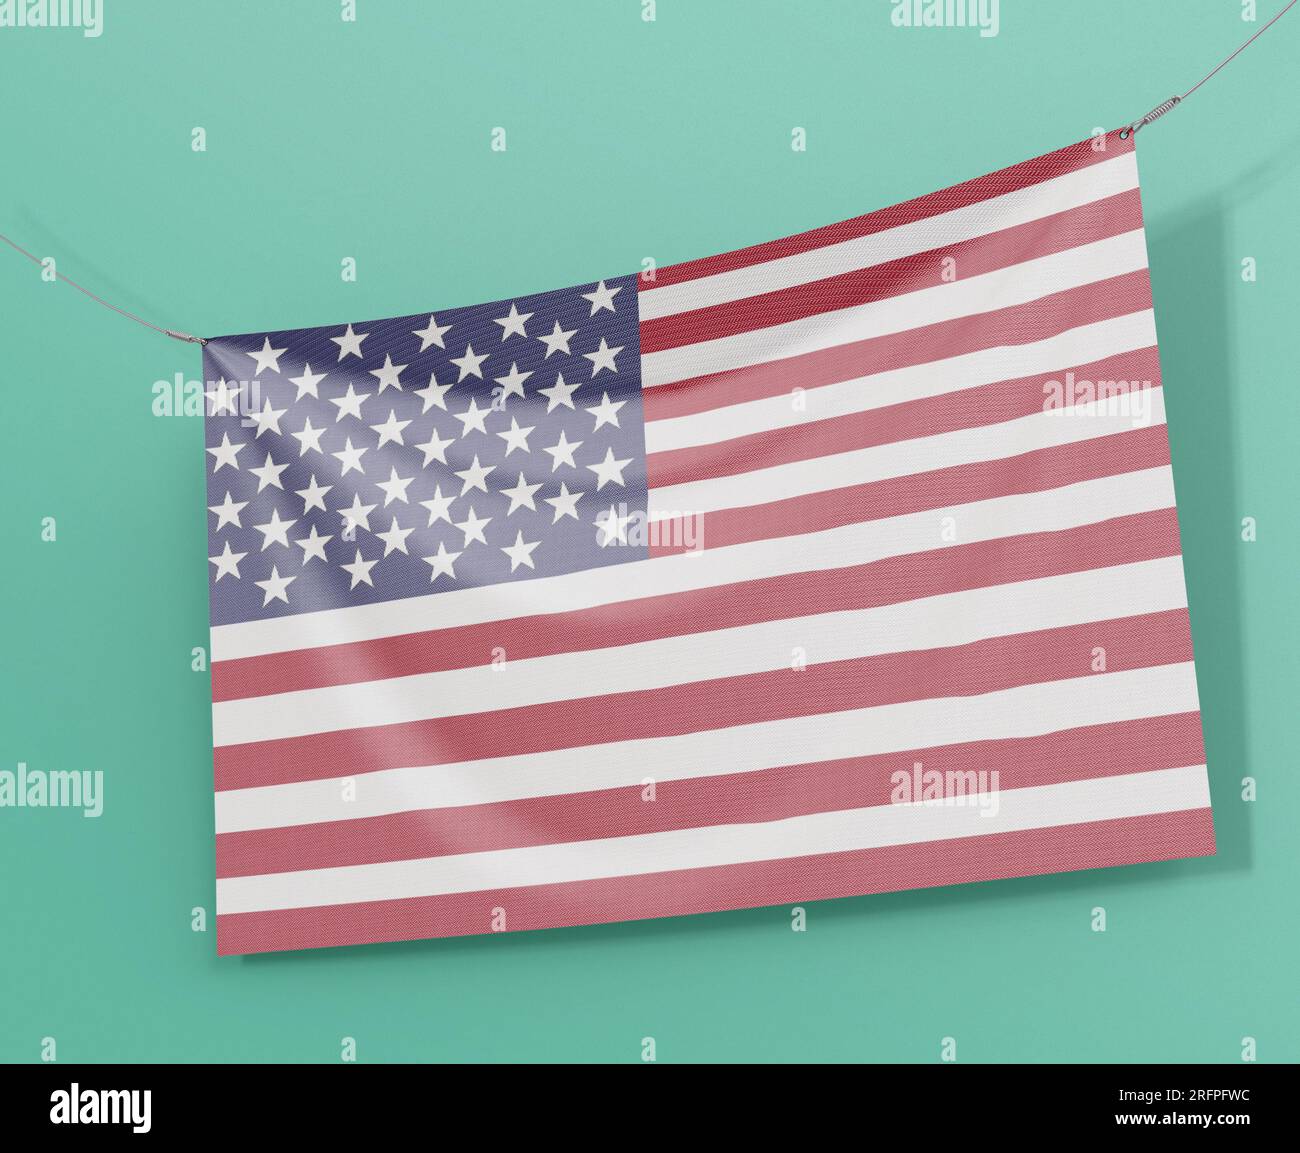 bandiera dell'america, bandiera hd usa Foto Stock